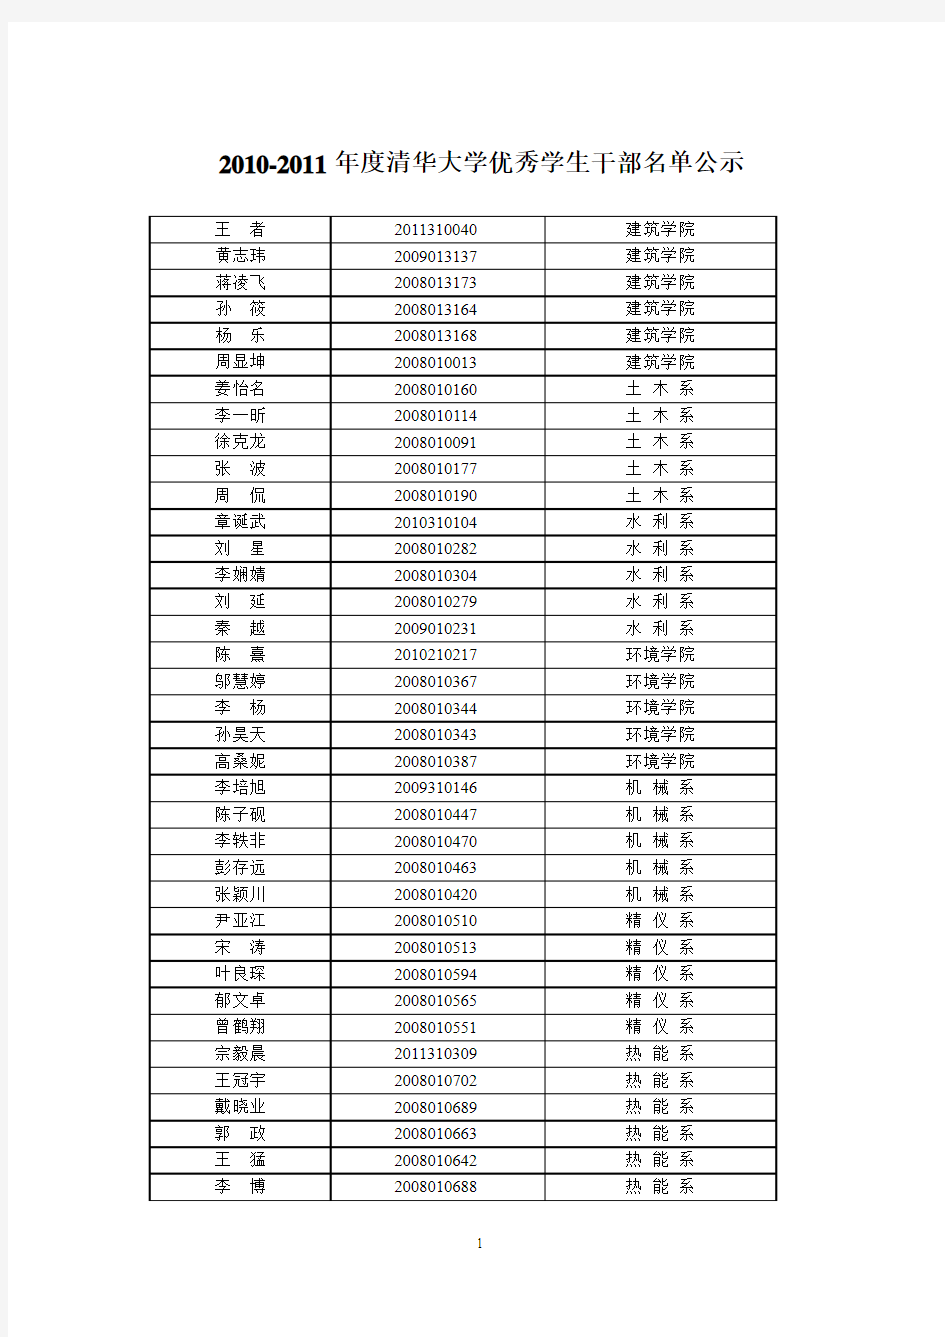 2010-2011学年度清华大学优秀学生干部名单公示材料